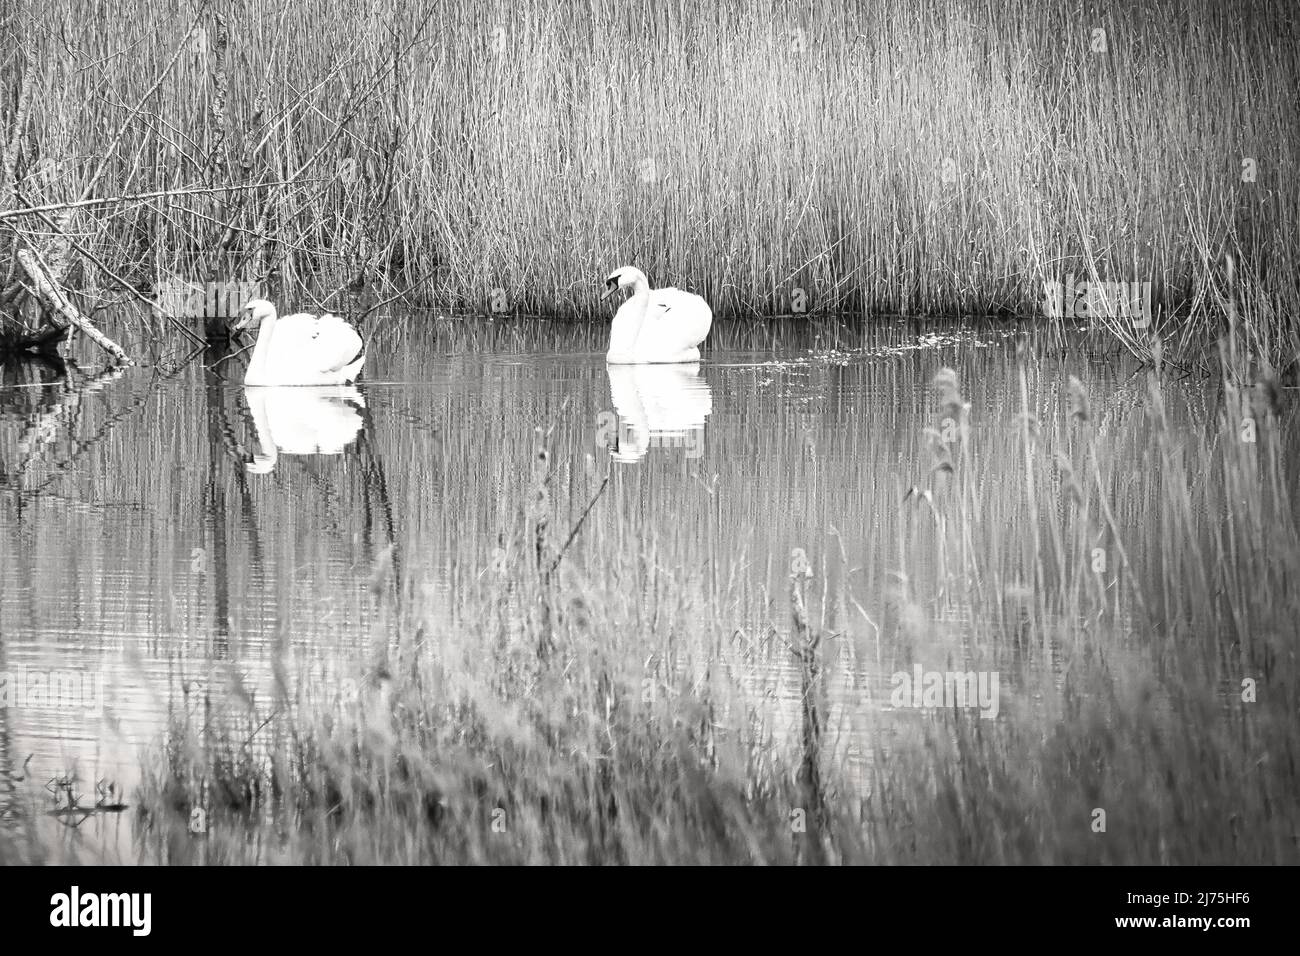 coppia di cigni, in bianco e nero, nel parco naturale darss. tempo di accoppiamento di uccelli. cigni muti con piumaggio bianco. foto animali in natura Foto Stock